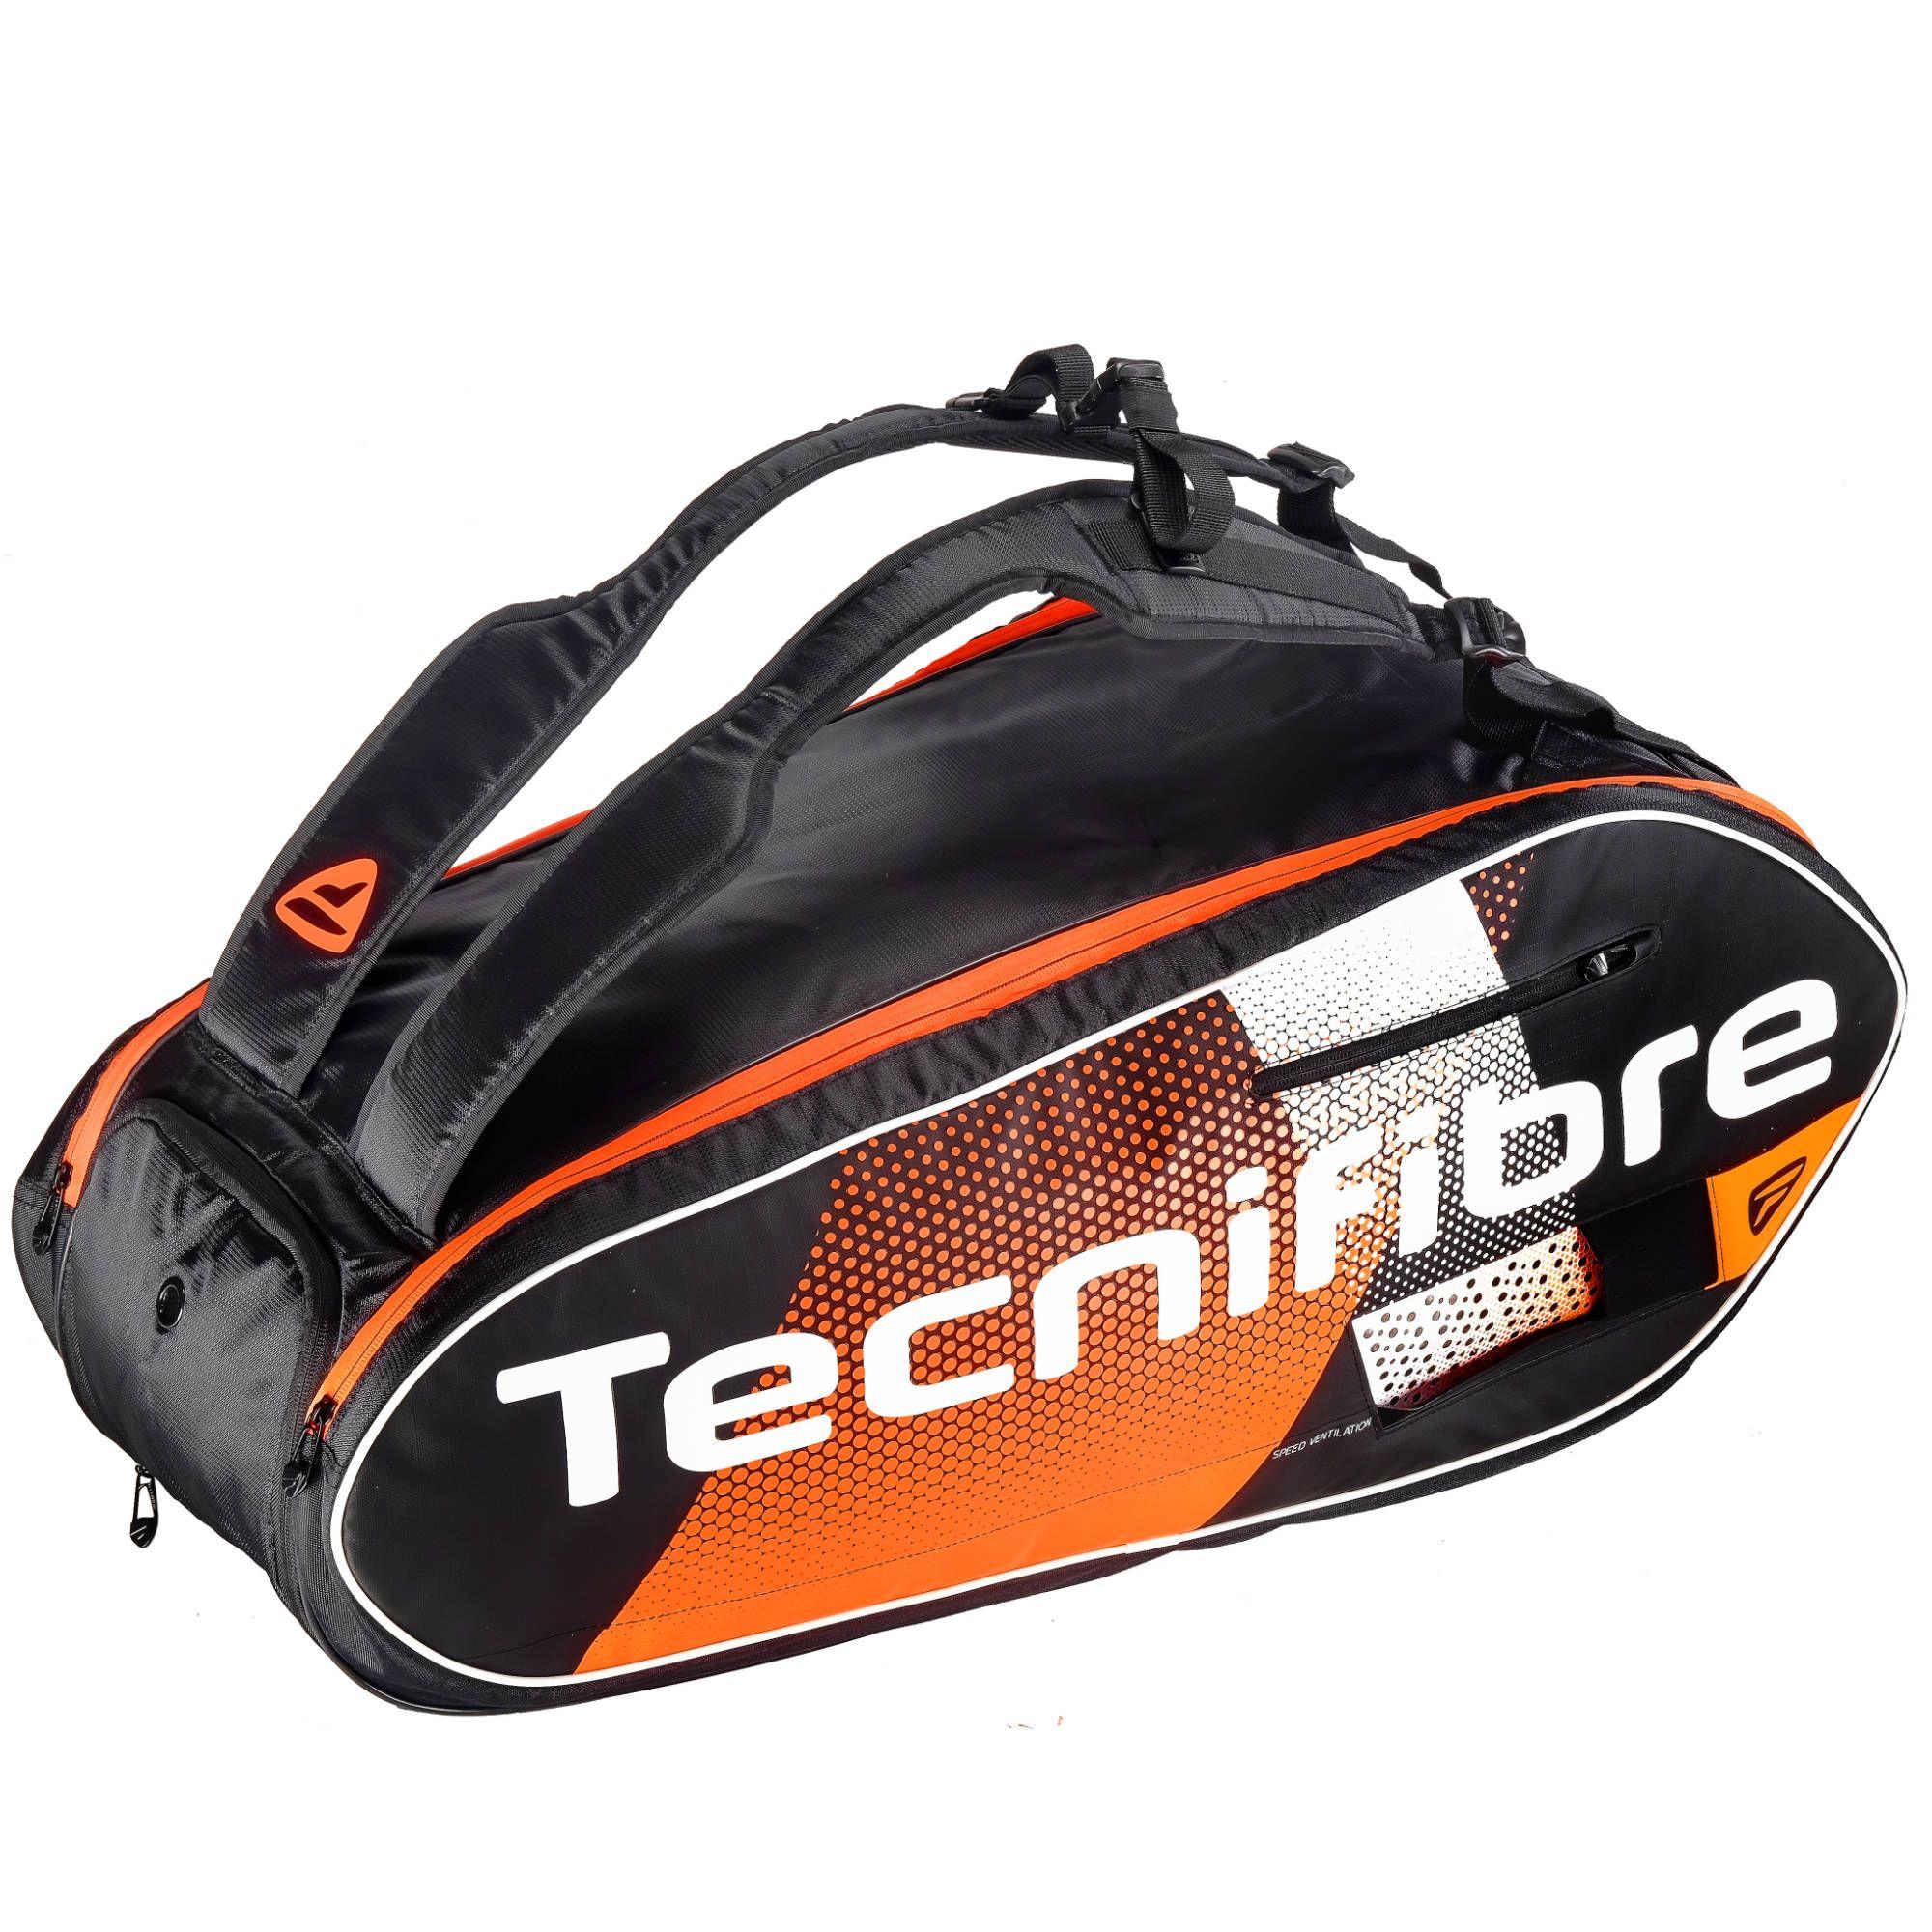 Tecnifibre Air Endurance 9R Colour: Black/Orange